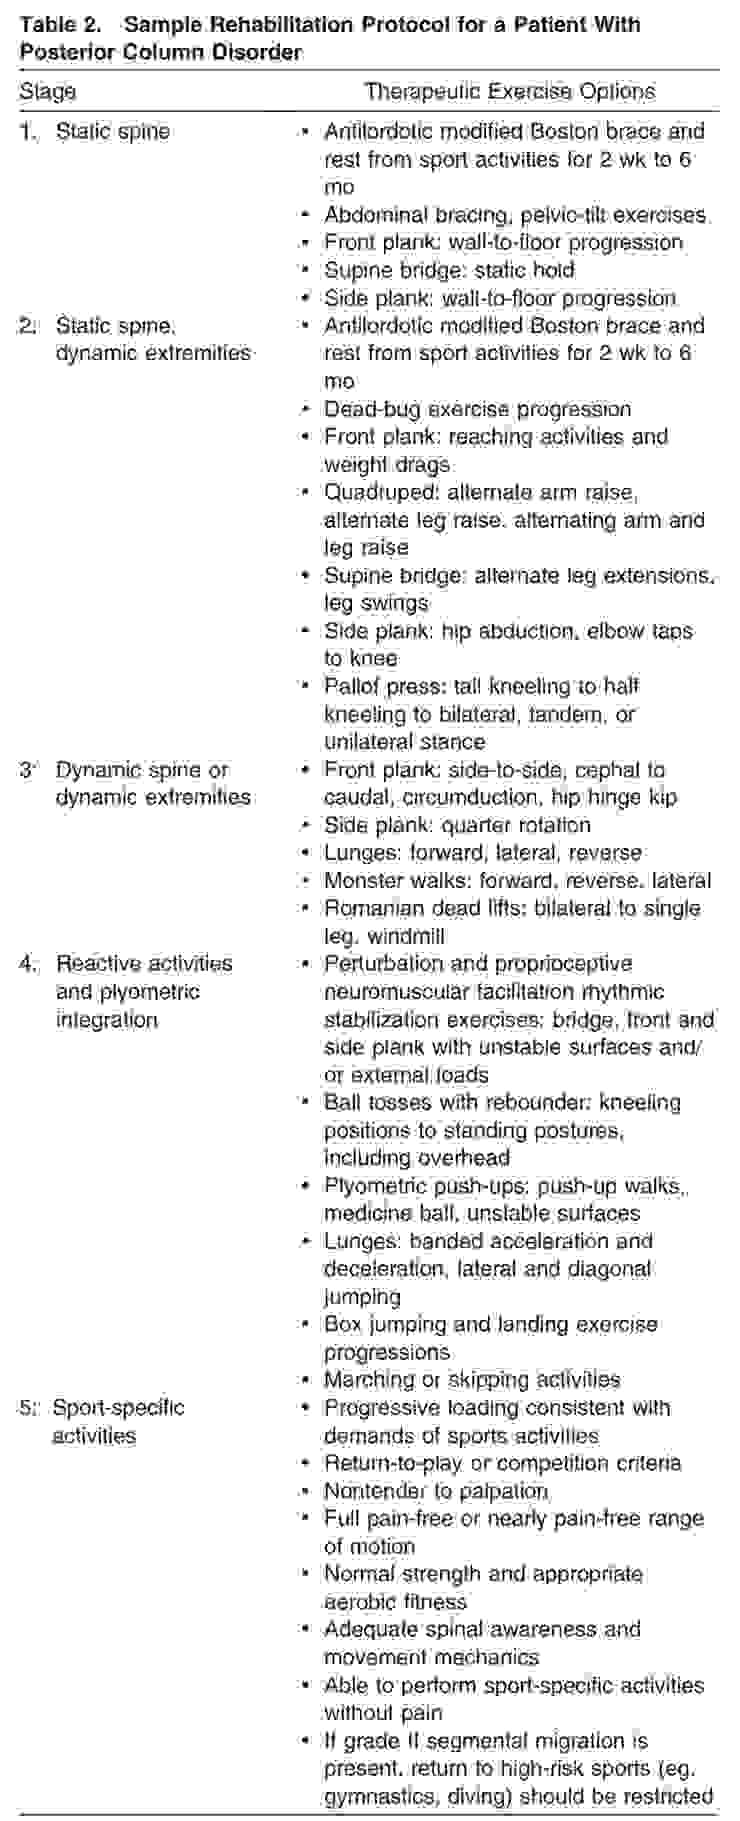 表1:針對「後脊柱失能」的人所提出的復健指引。